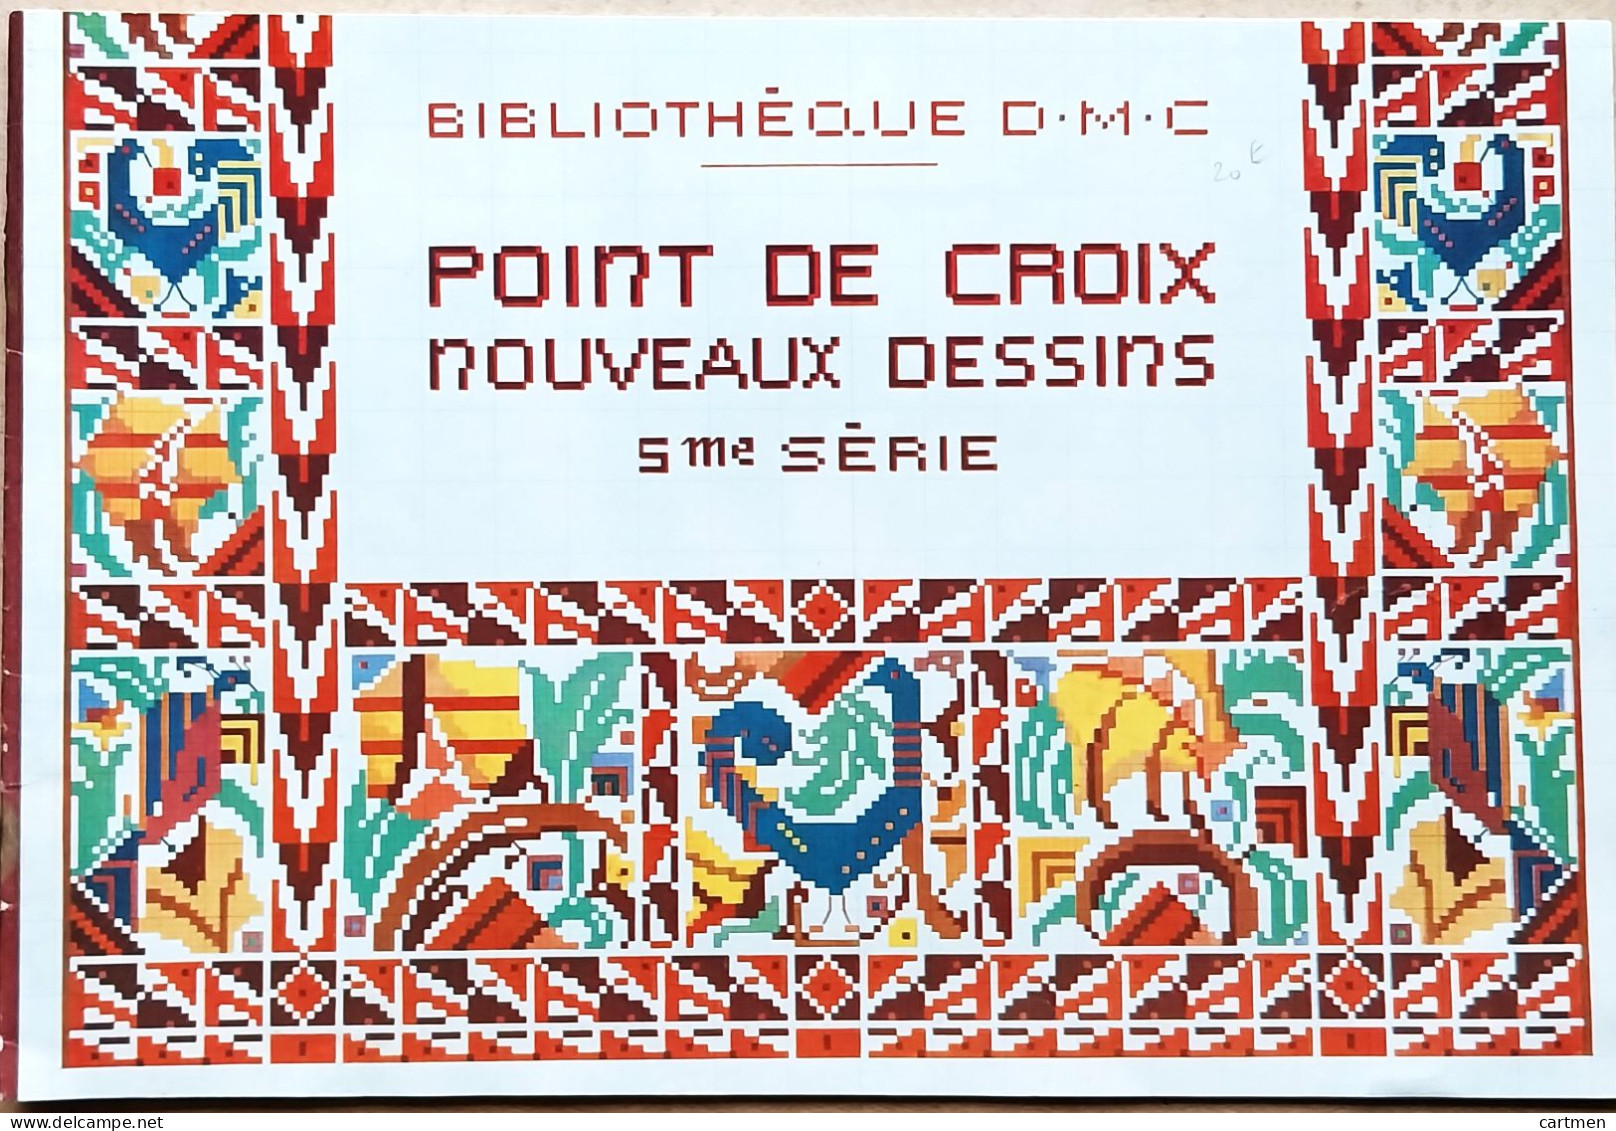 BRODERIE DENTELLE POINT DE CROIX  BIBLIOTHEQUE DMC DILLMONT POINT DE CROIX DESSINS 5° SERIE  ALBUM ETAT NEUF - Point De Croix